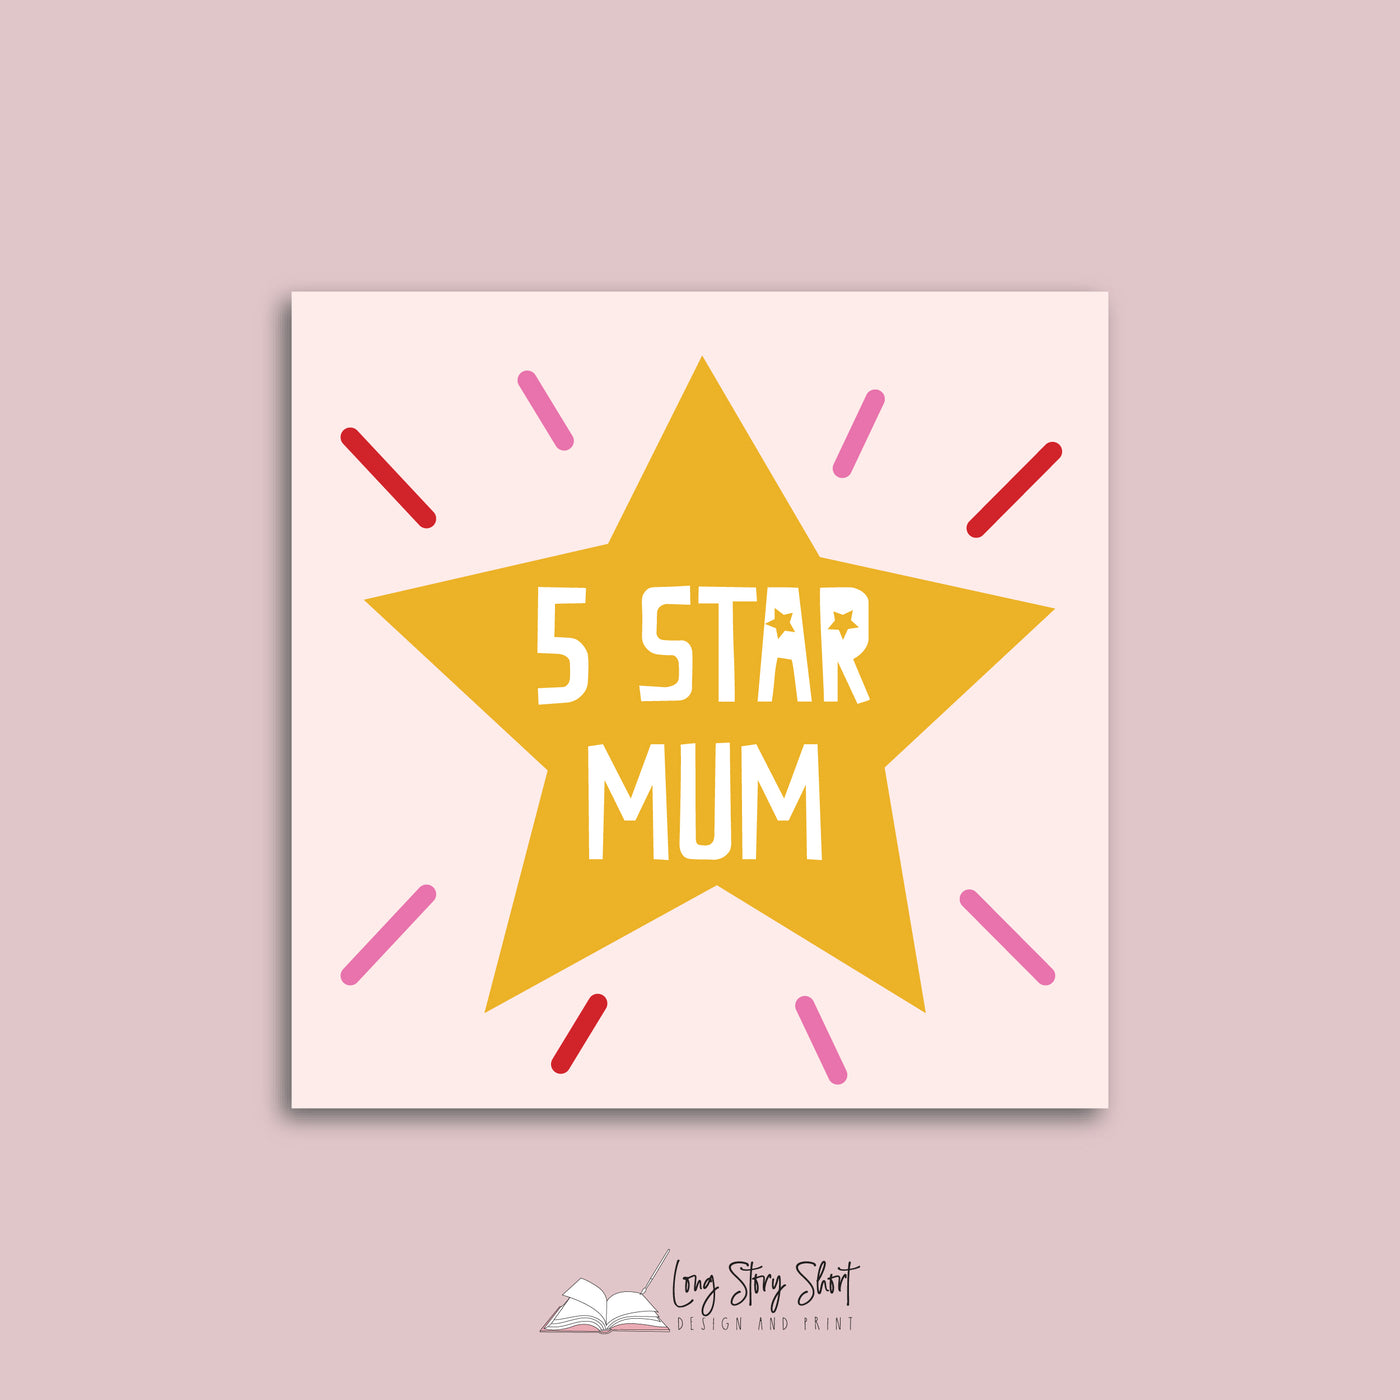 5 star mum Vinyl Label Pack